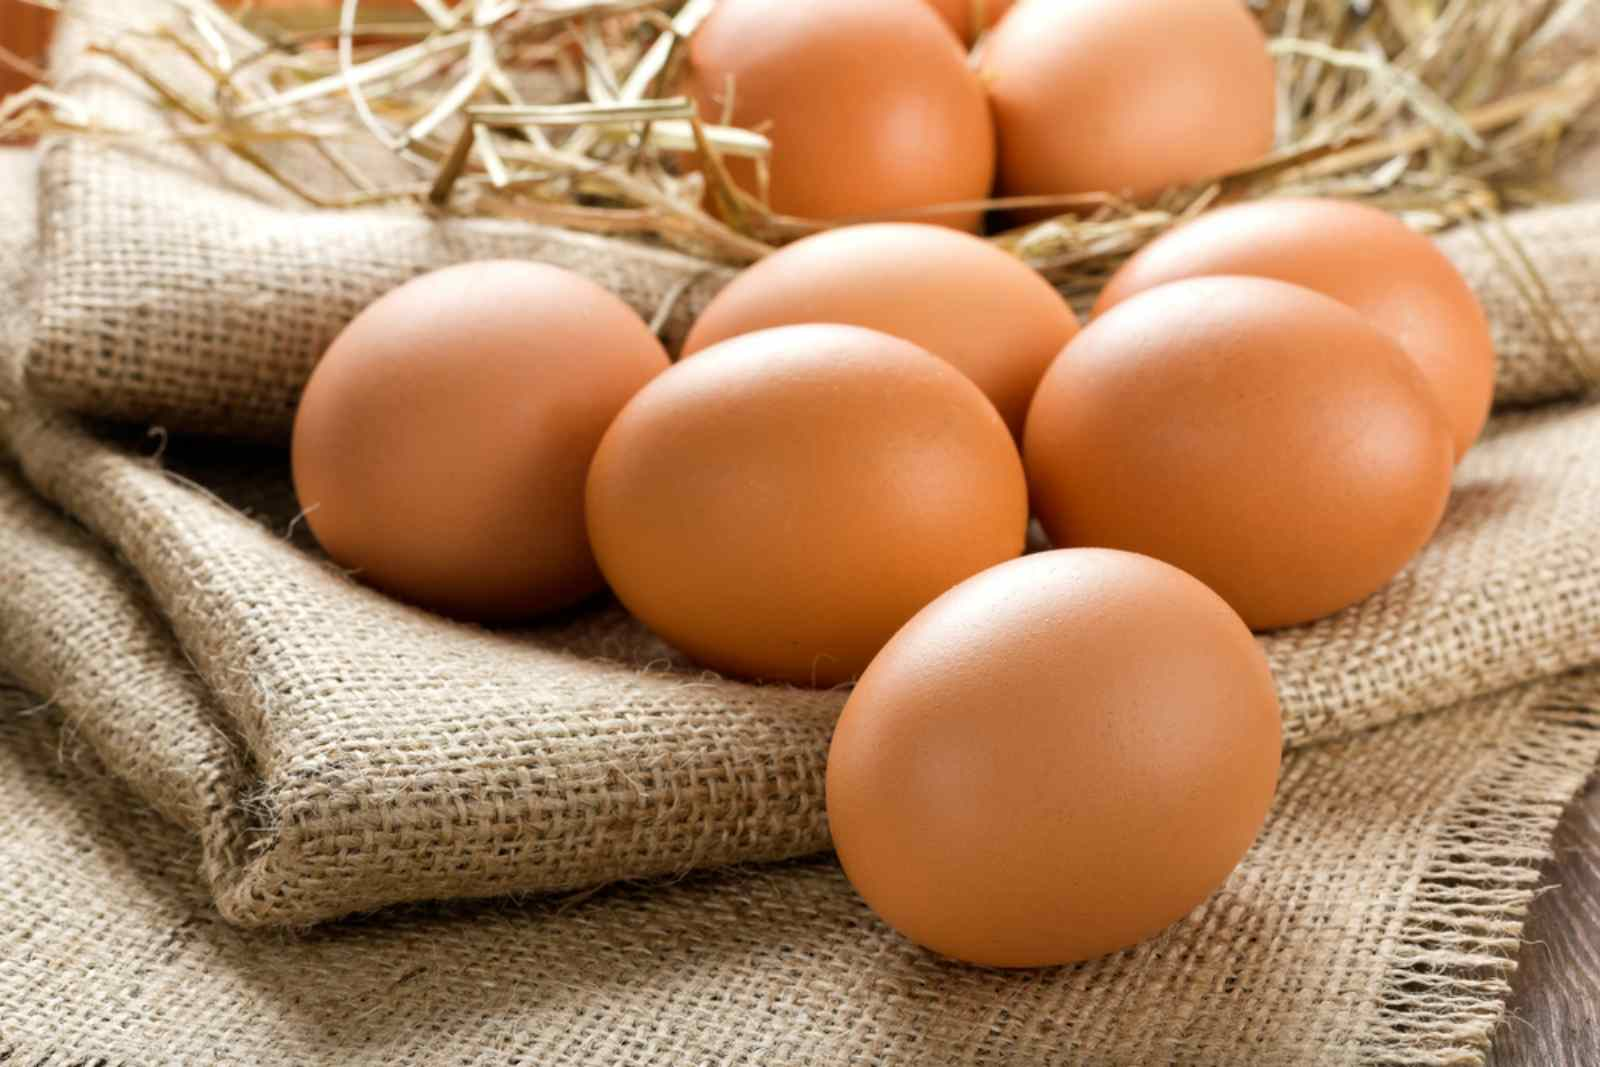 Trứng gà, trứng vịt, trứng ngỗng, trứng cút, loại nào bổ dưỡng hơn? Chuyên gia: Riêng loại trứng này ăn càng ít càng tốt- Ảnh 1.